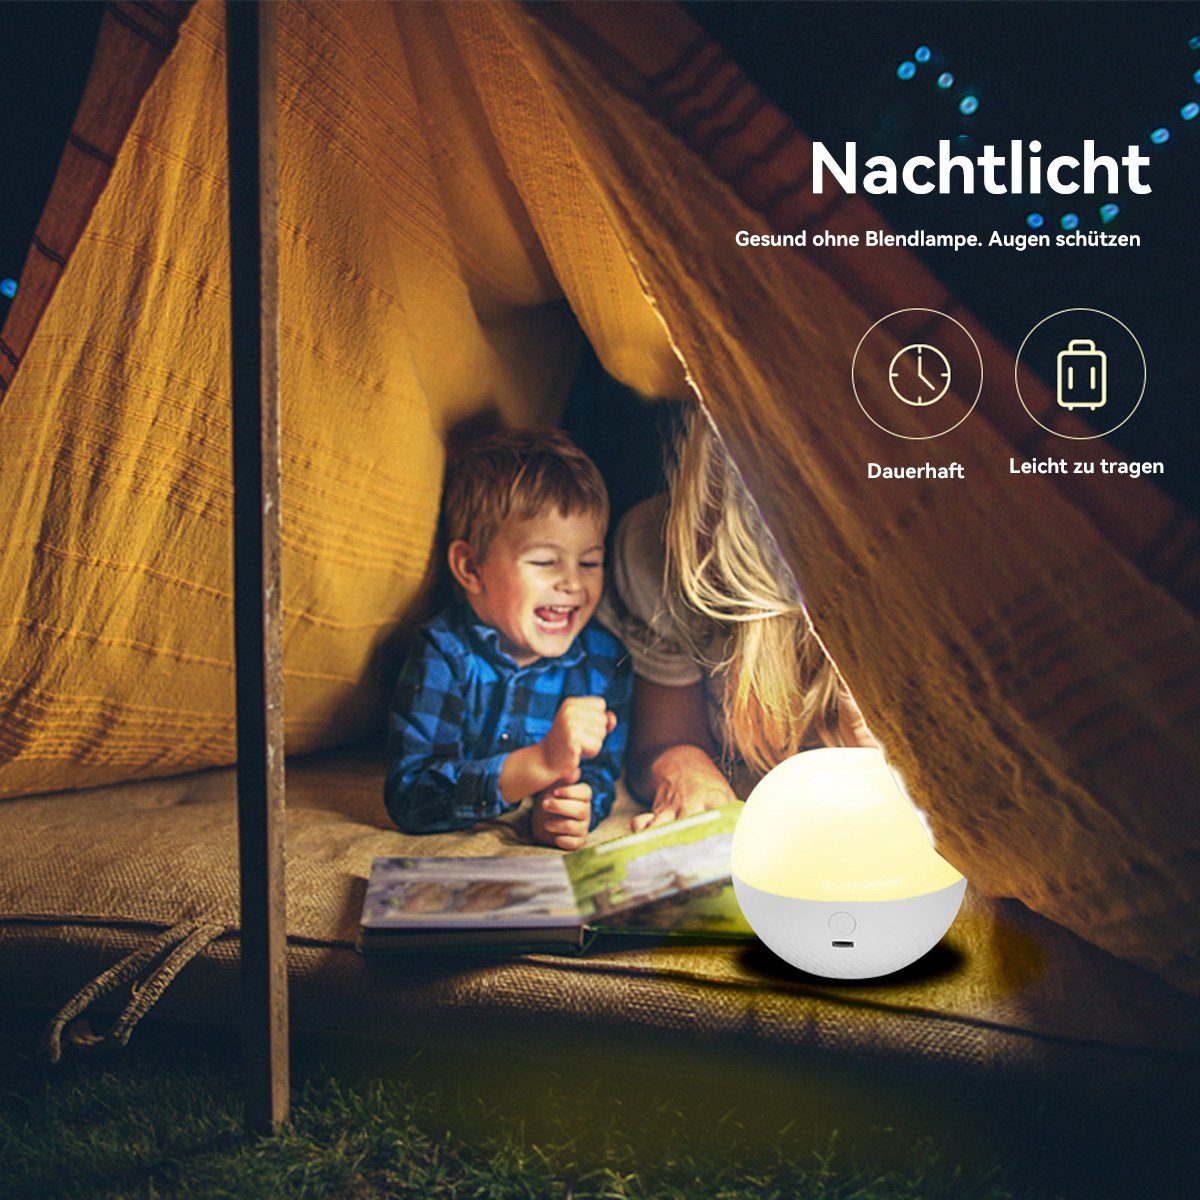 DOPWii Nachtlicht LED-Nachtlicht, Fernbedienung Illusion Touch Light farbige mit 16